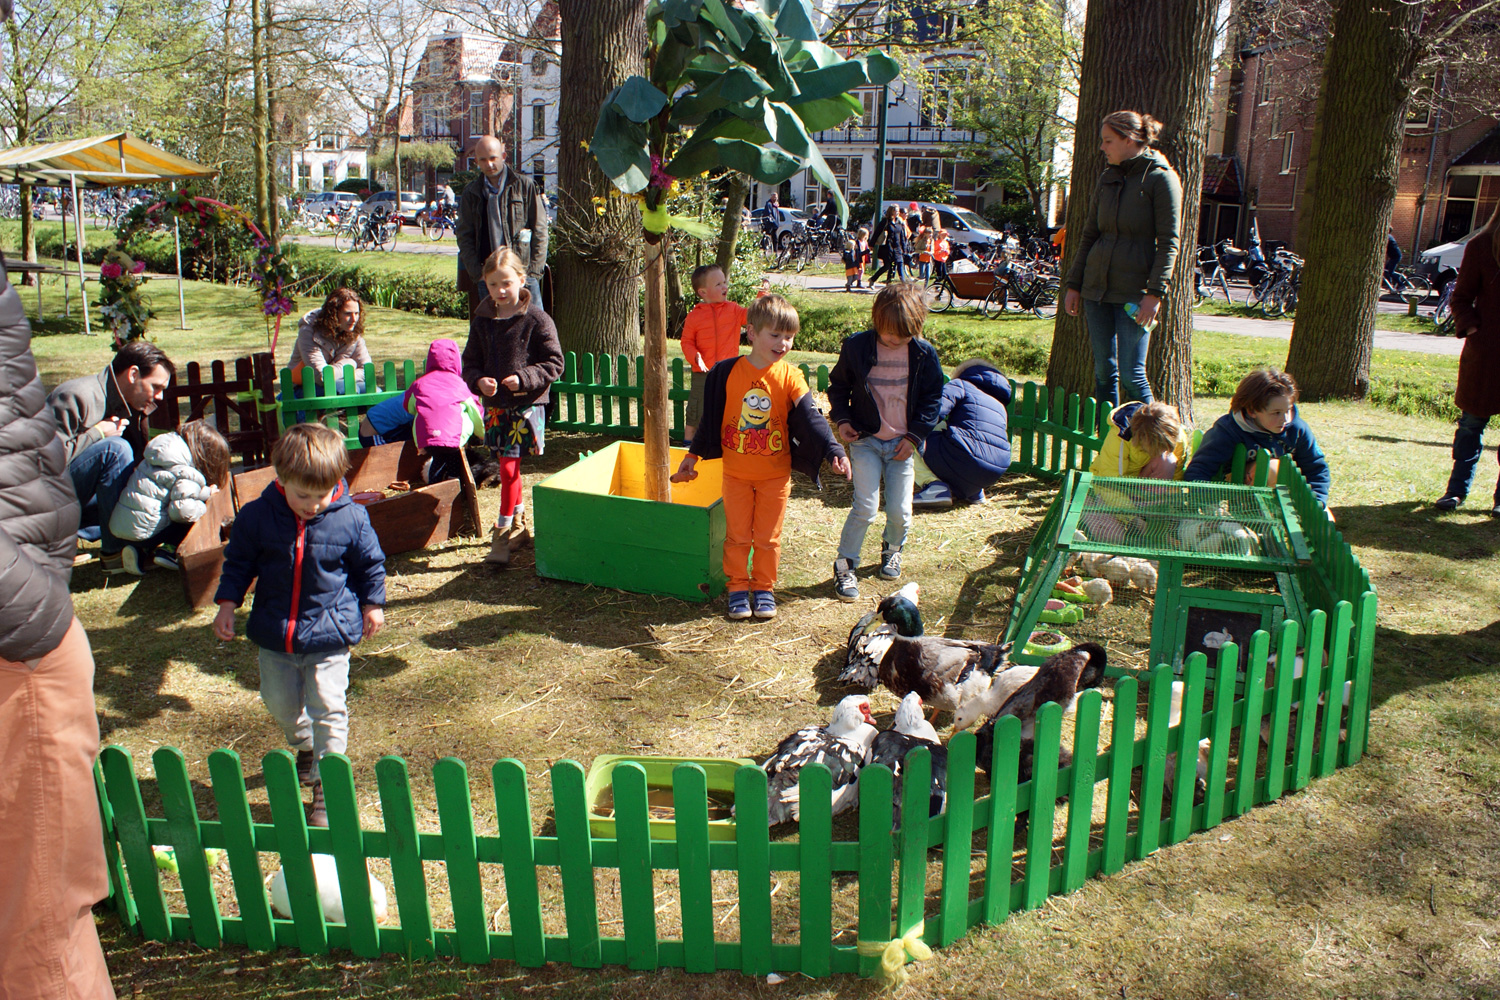 Uitje met peuter; wat te doen & leuke activiteiten met kind van 2, 3 of 4 jaar in Nederland. Wat kan je doen / waar naar toe; van binnen overdekt museum of speeltuin met slecht weer tot buiten?